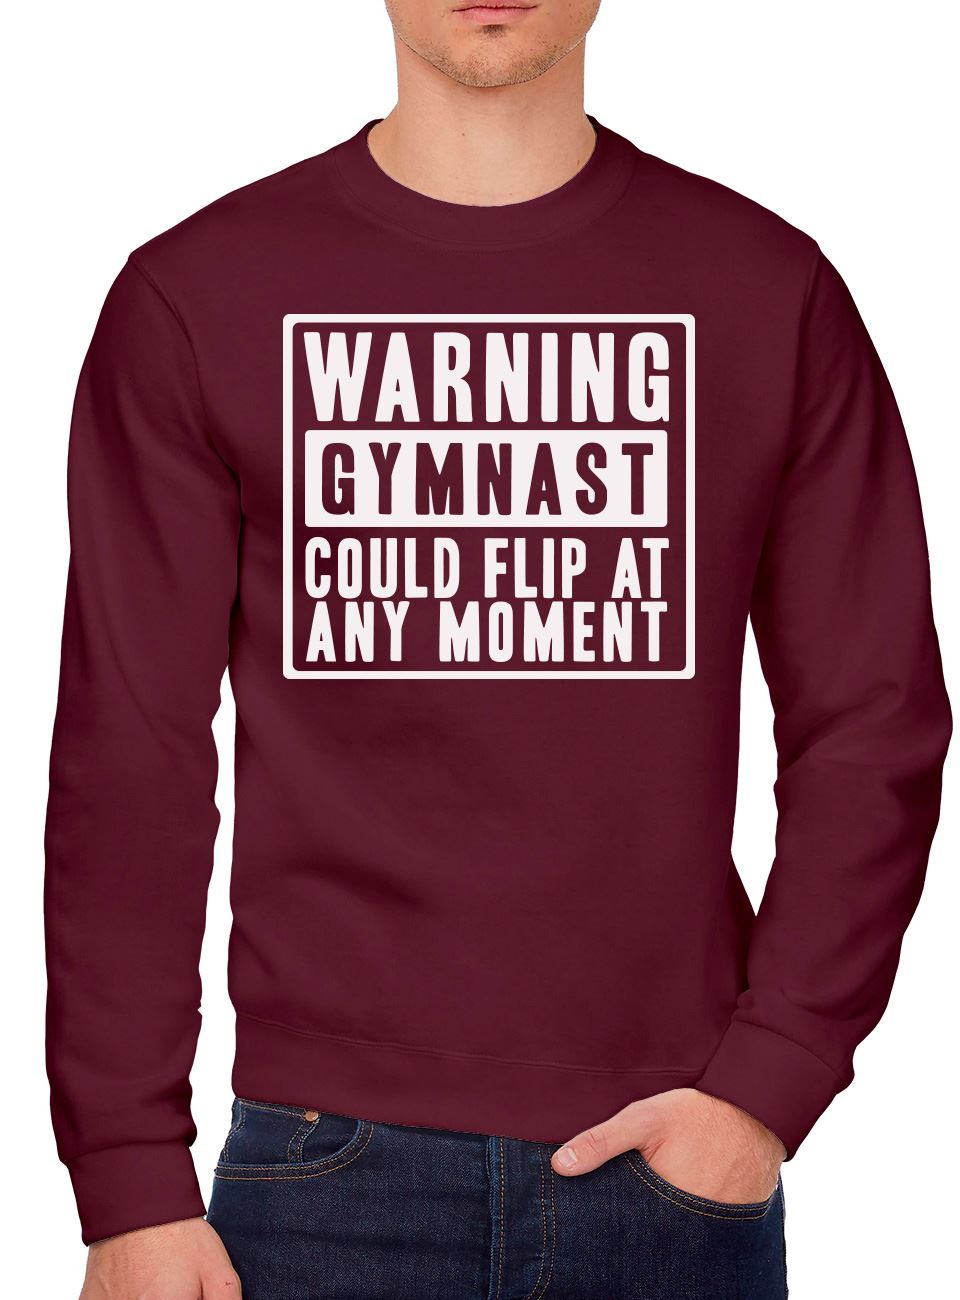 Warning Gymnast Could Flip at Any Moment - Youth & Mens Sweatshirt